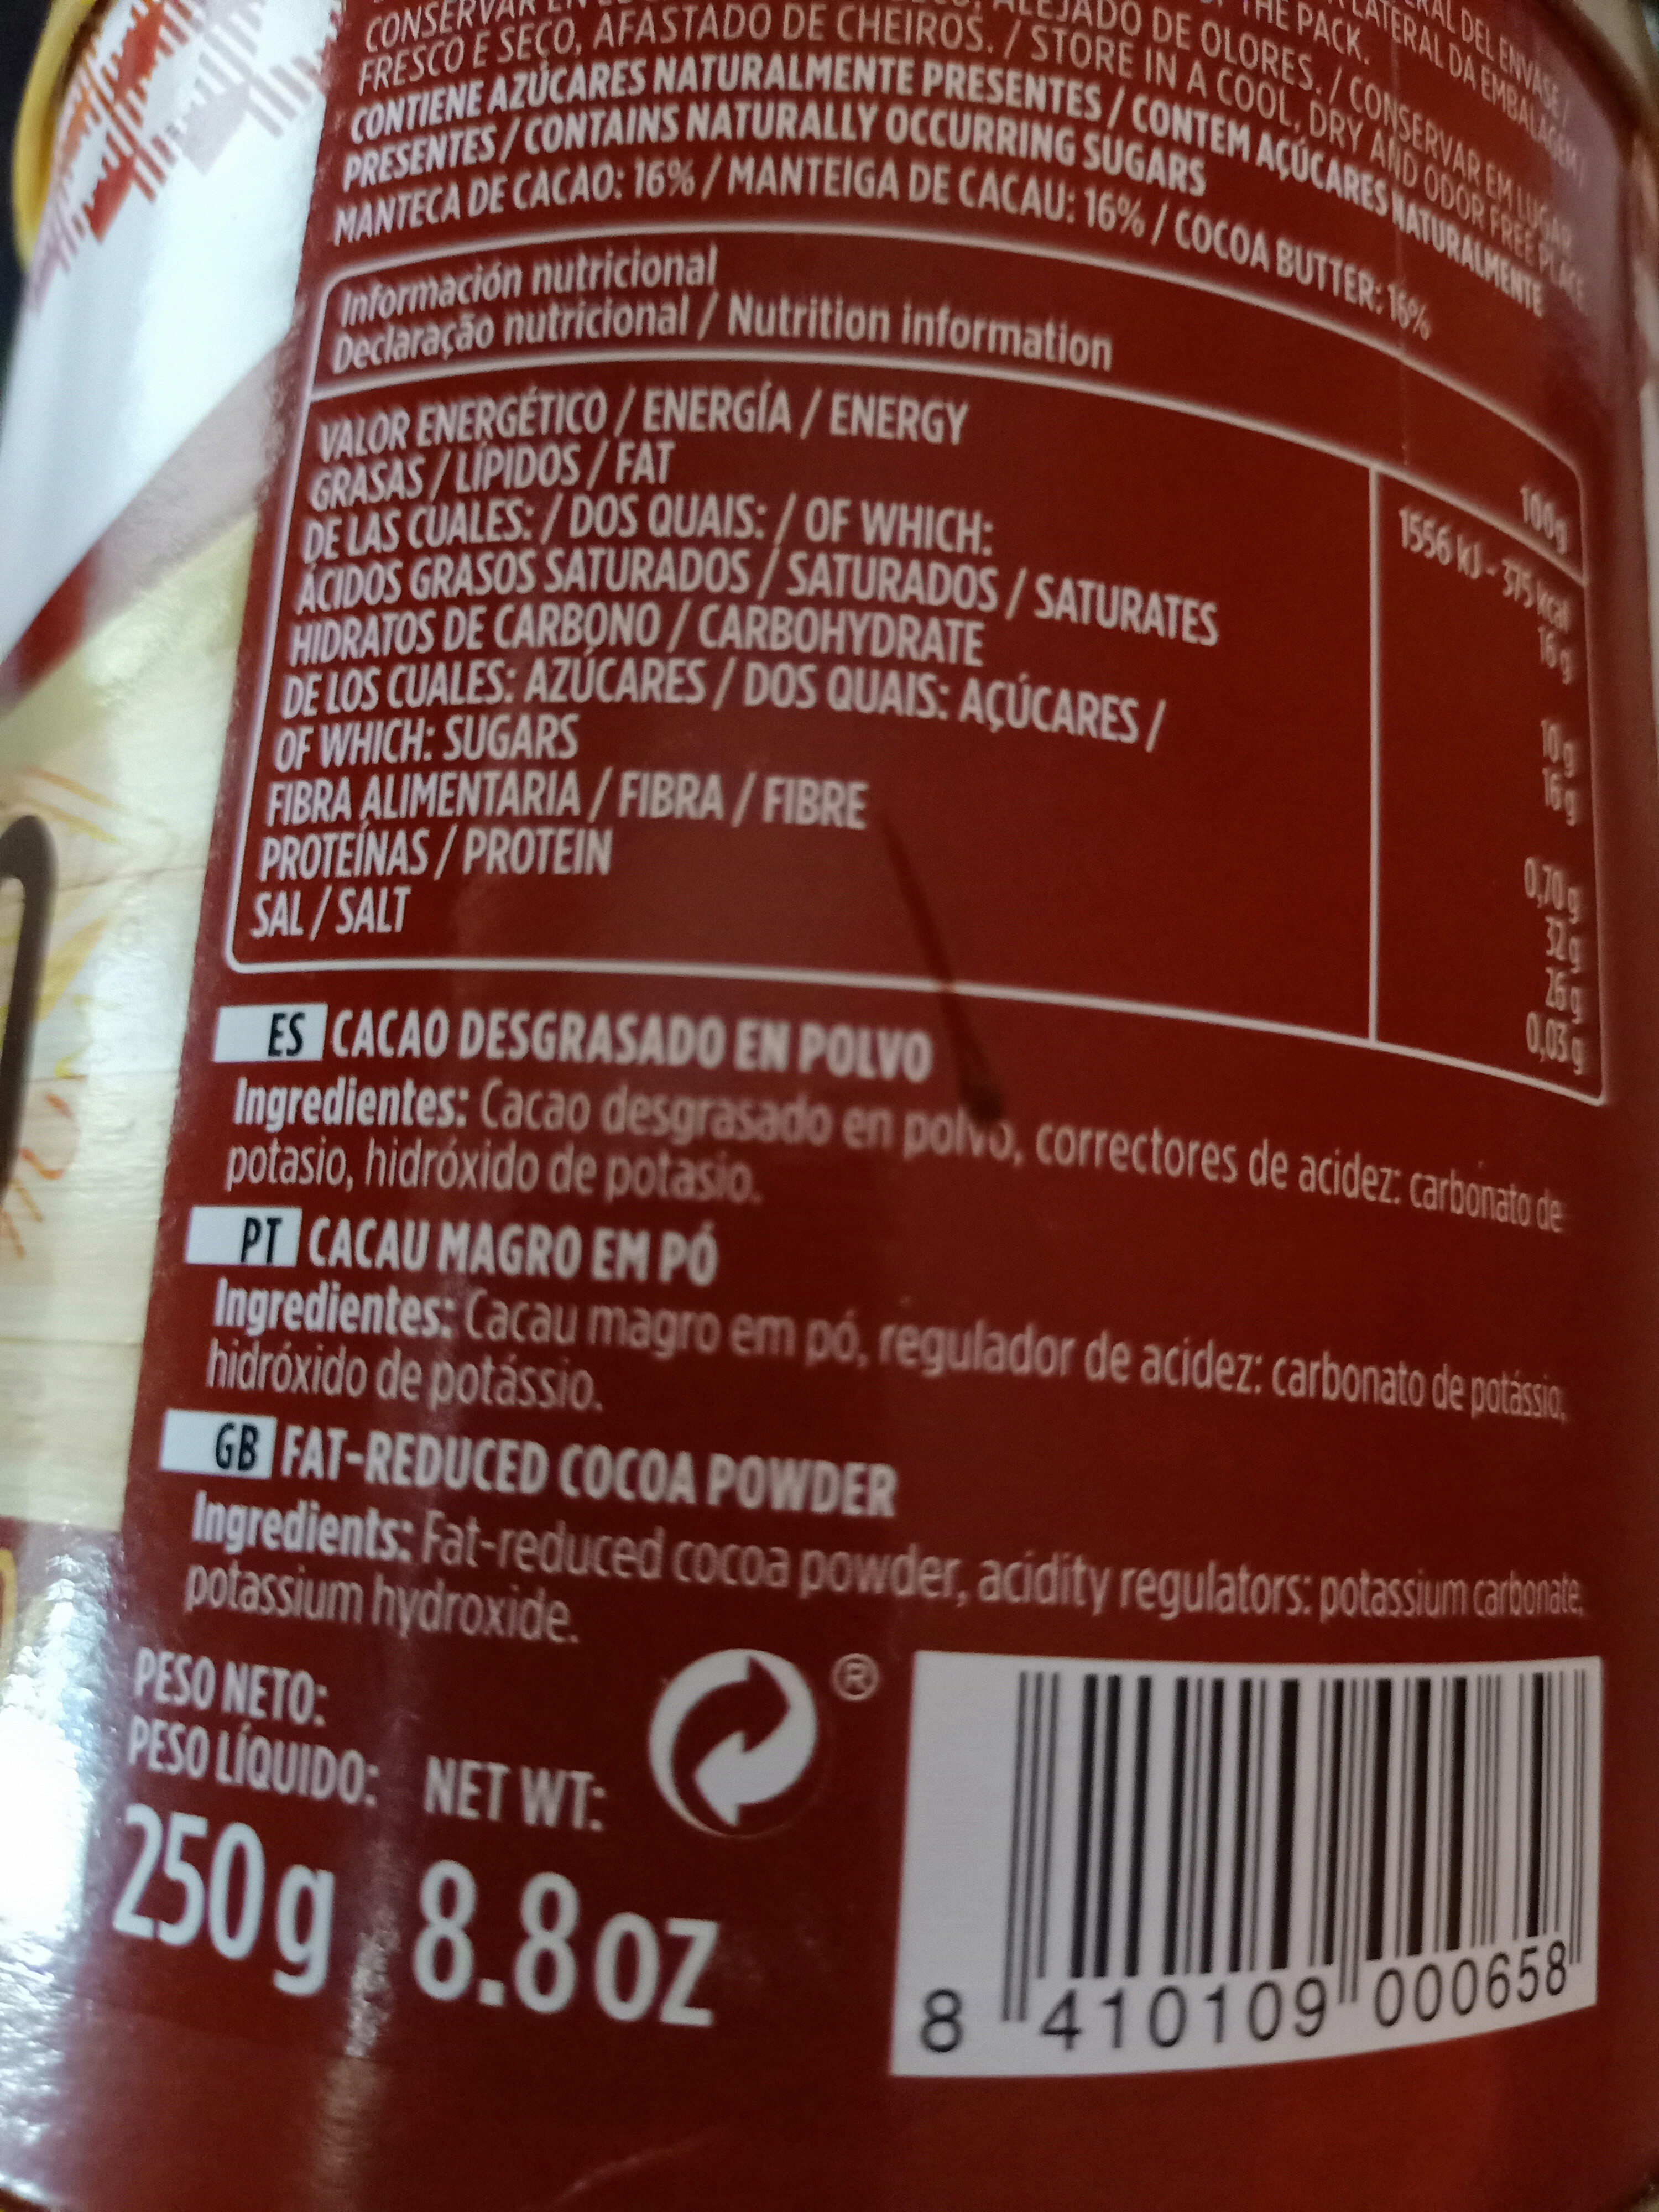 Cacao puro en polvo desgrasado - Ingredients